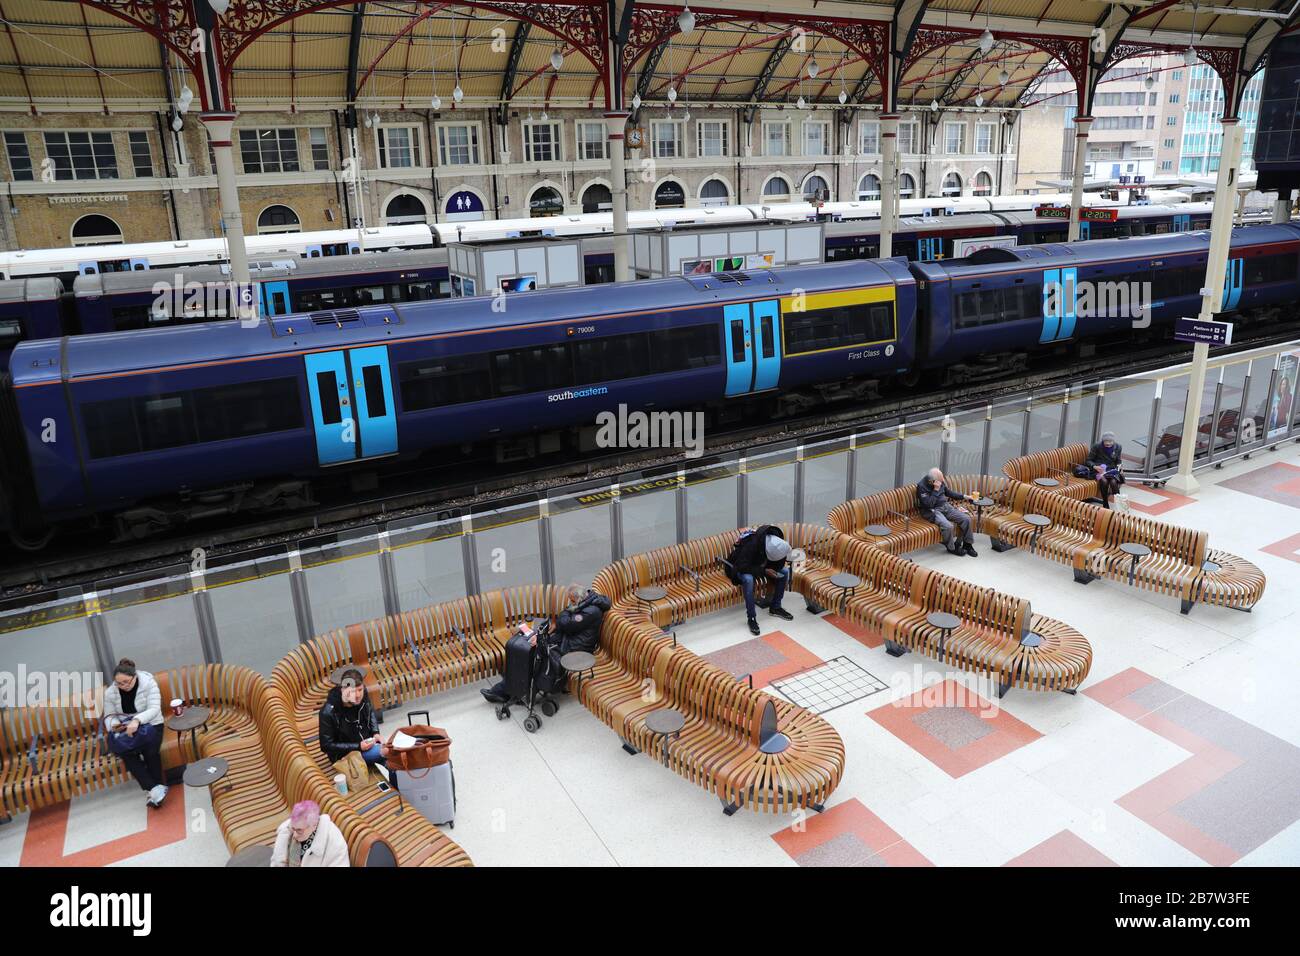 Una manciata di viaggiatori aspettano i treni alla stazione ferroviaria di Victoria a Londra, mentre i pendolari passano a lavorare da casa e il pubblico è invitato ad evitare i contatti sociali per impedire la diffusione del coronavirus. Foto Stock